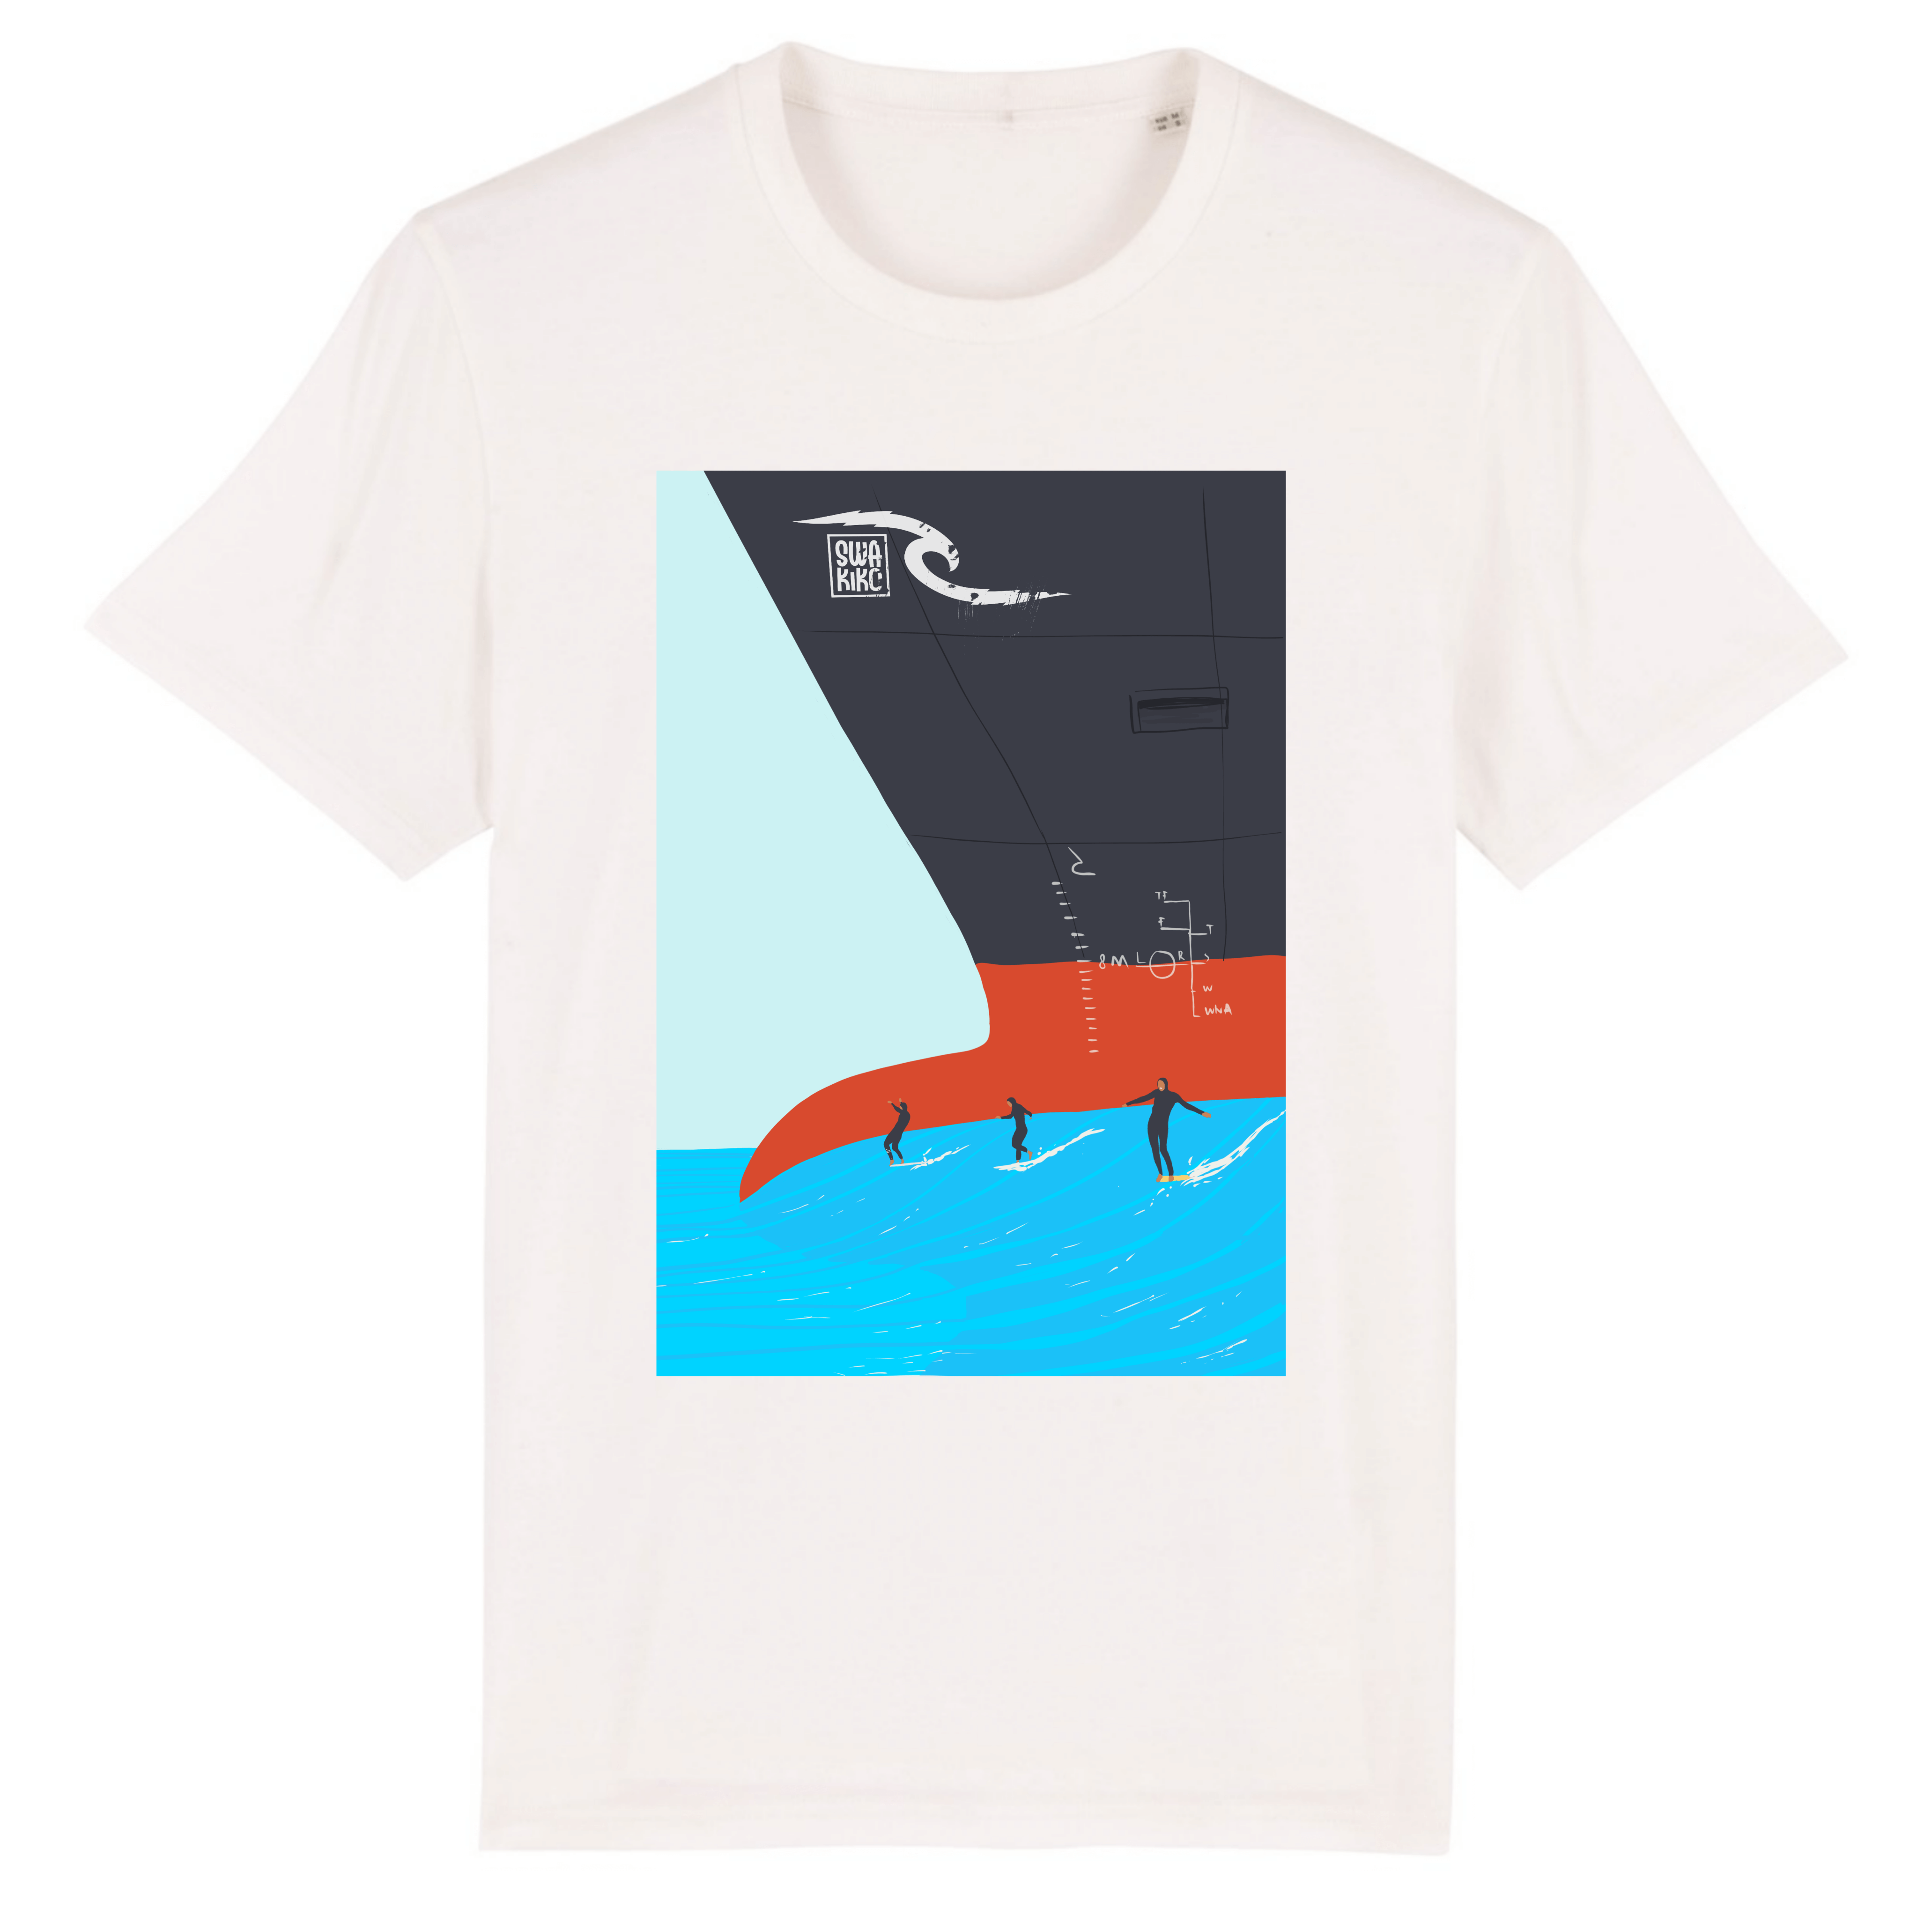 Wit T-shirt met een vrachtschip die golven maakt waarop surfers surfen